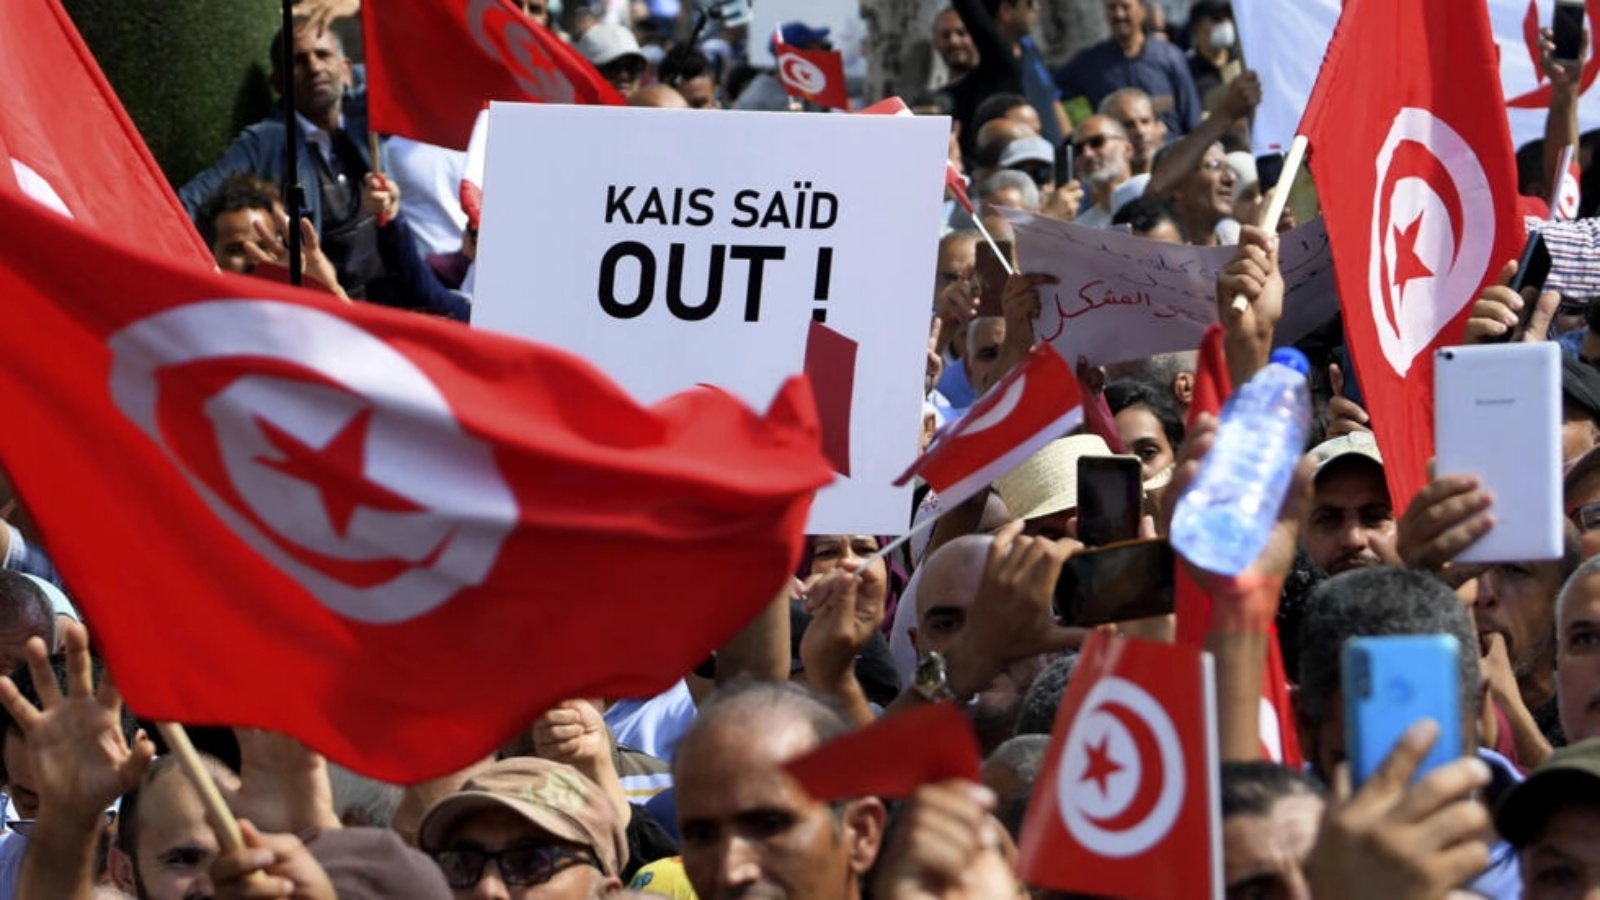 أنصار الحزب الدستوري الحر التونسي يلوحون بالأعلام الوطنية ويرفعون لافتات خلال مظاهرة ضد الرئيس قيس سعيد، في العاصمة تونس، يوم 15 أكتوبر 2022